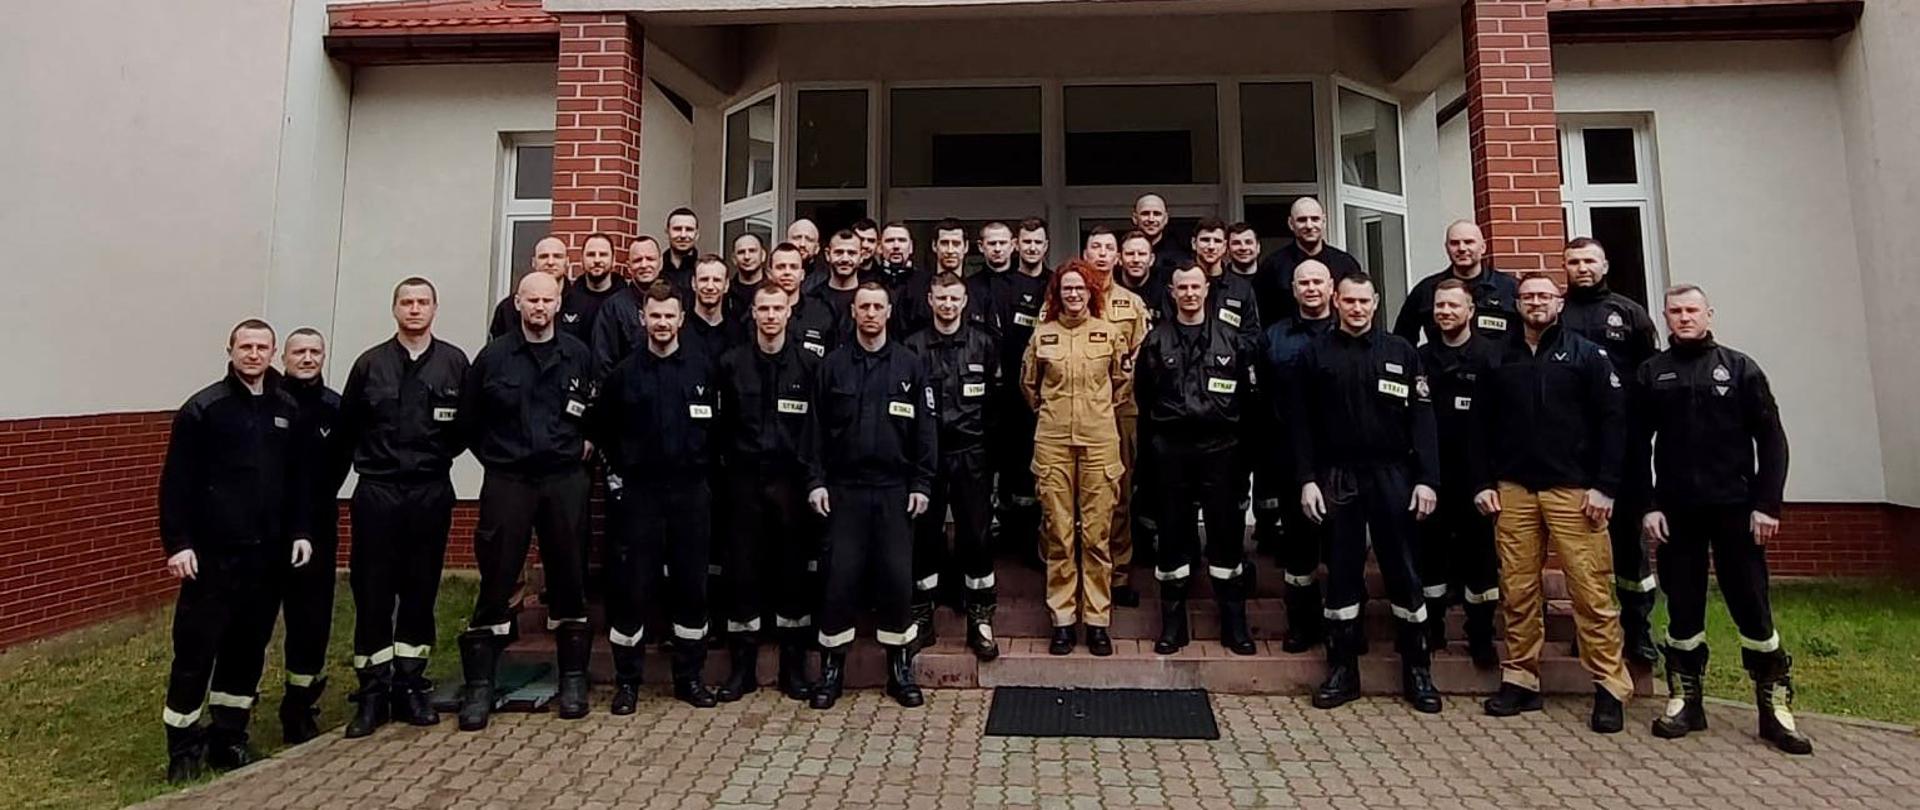 Wspólne zdjęcie strażaków przed ośrodkiem szkolenia.